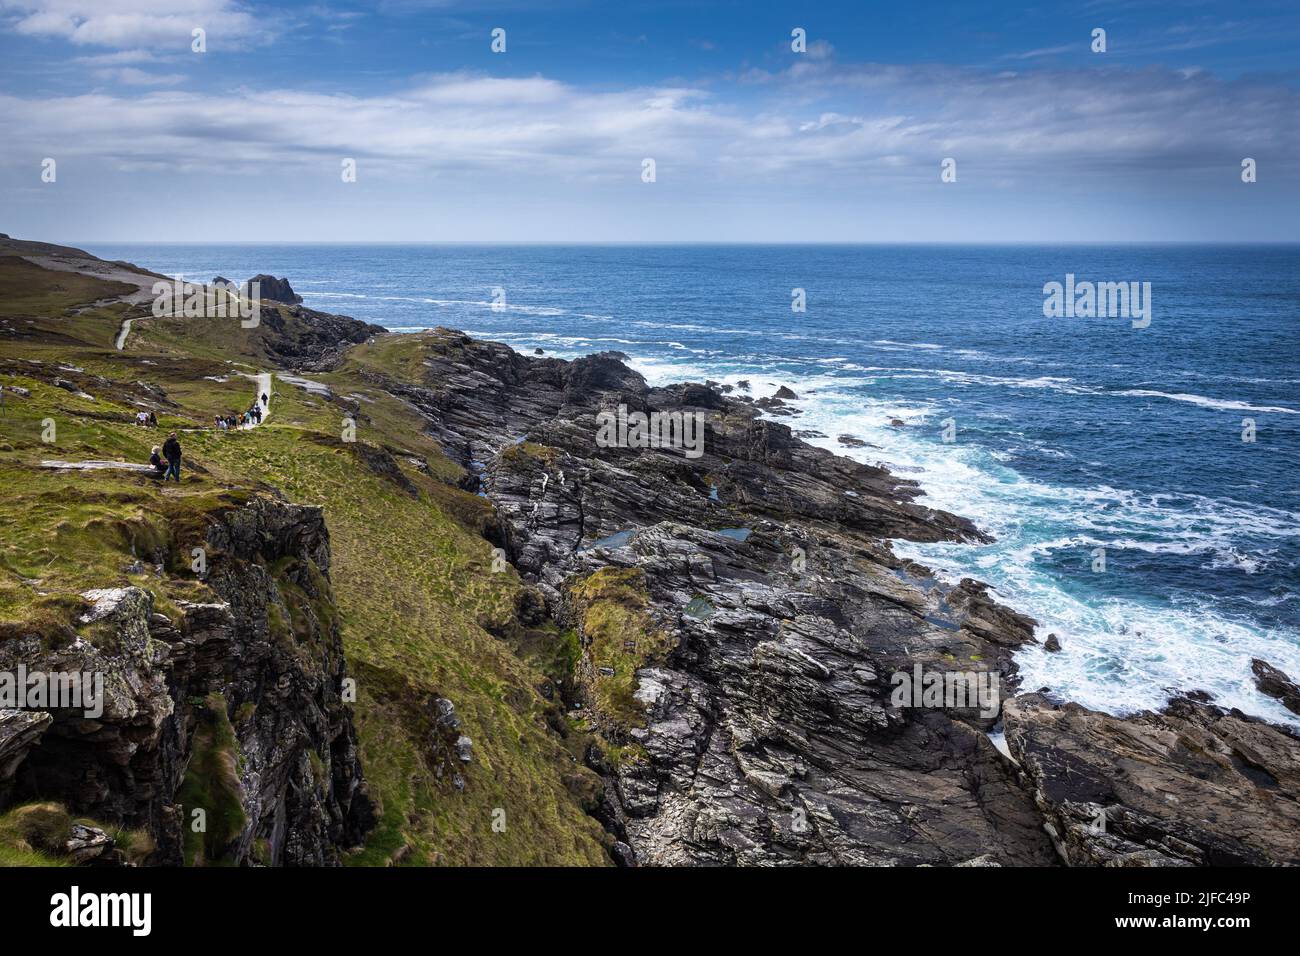 Malin Head, Ireland Stock Photo